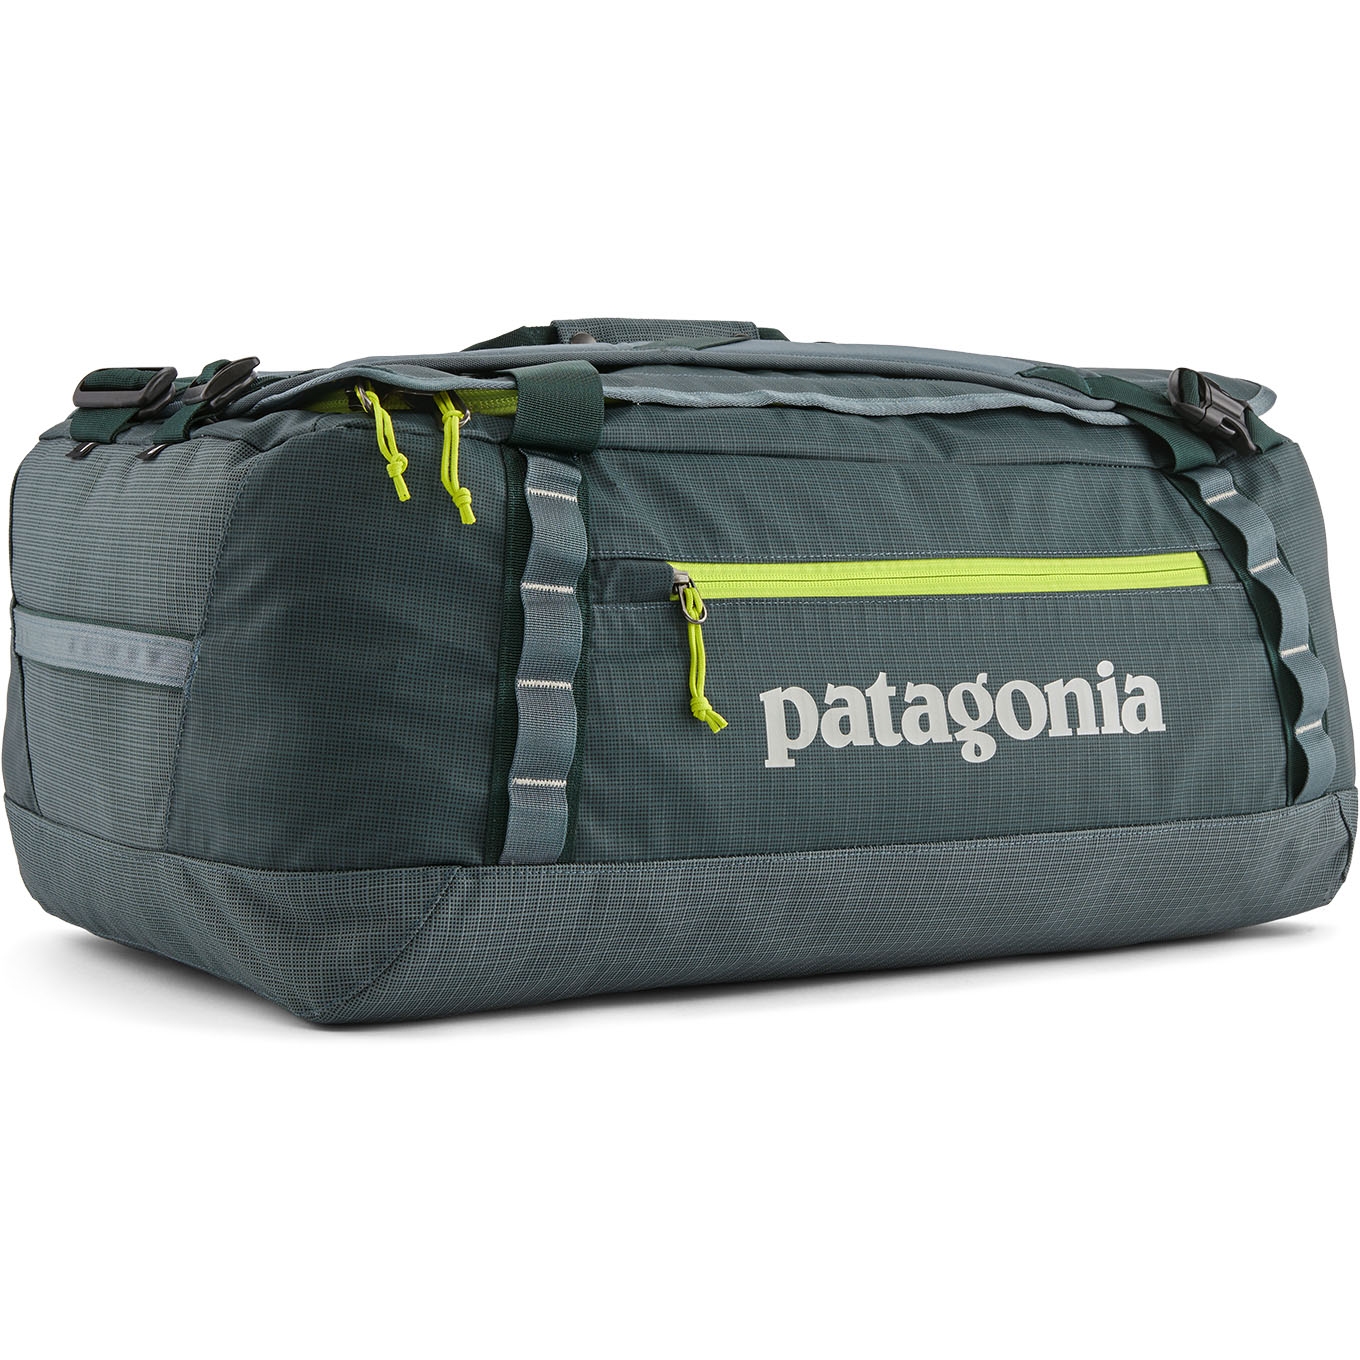 Produktbild von Patagonia Black Hole Duffel 55L Reisetasche - Nouveau Green